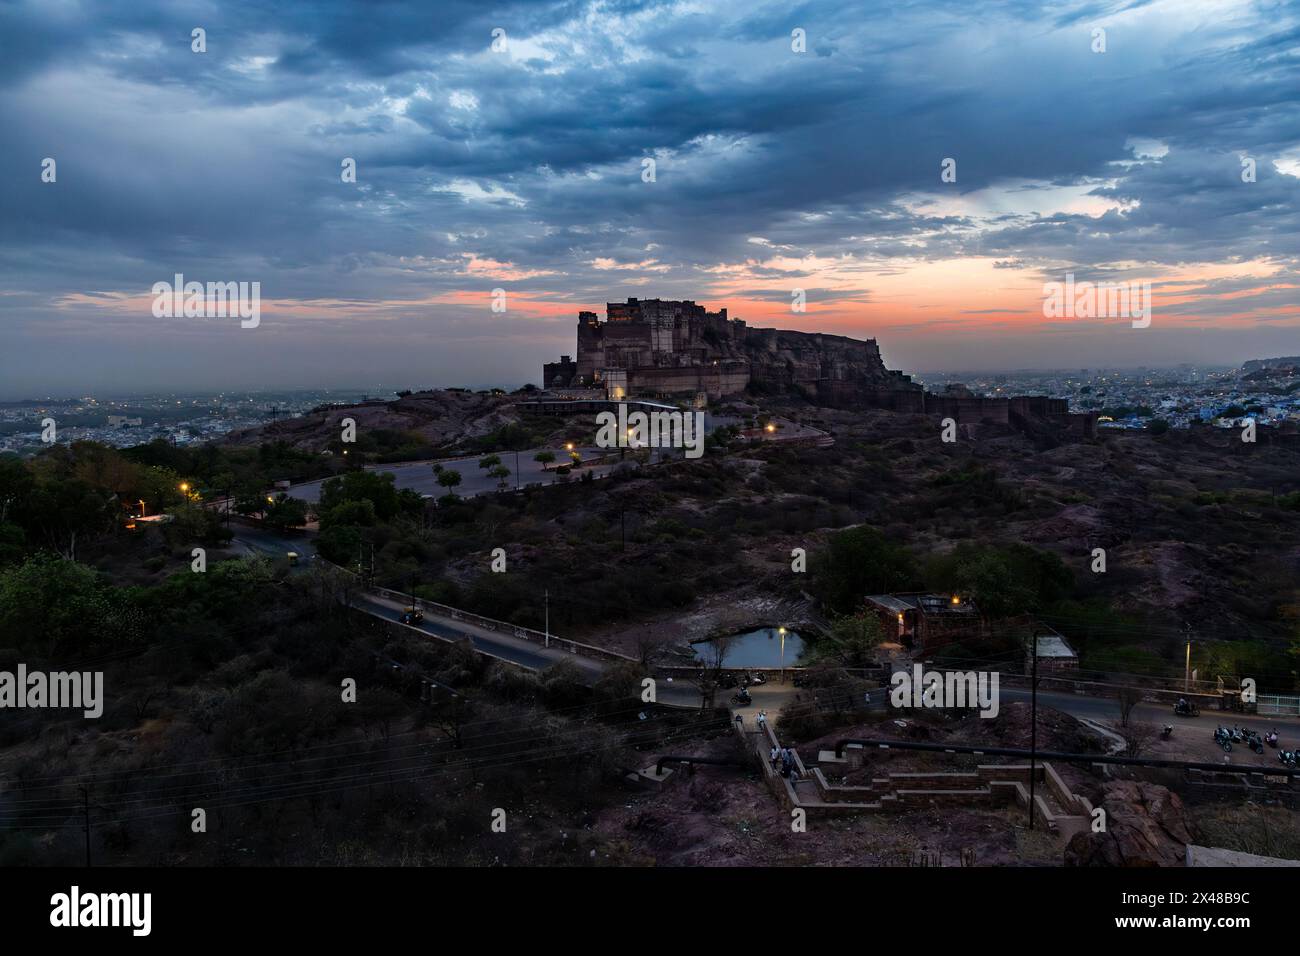 ancien fort historique avec le ciel de coucher de soleil spectaculaire au crépuscule de l'image d'angle plat est prise à mehrangarh fort jodhpur rajasthan inde. Banque D'Images